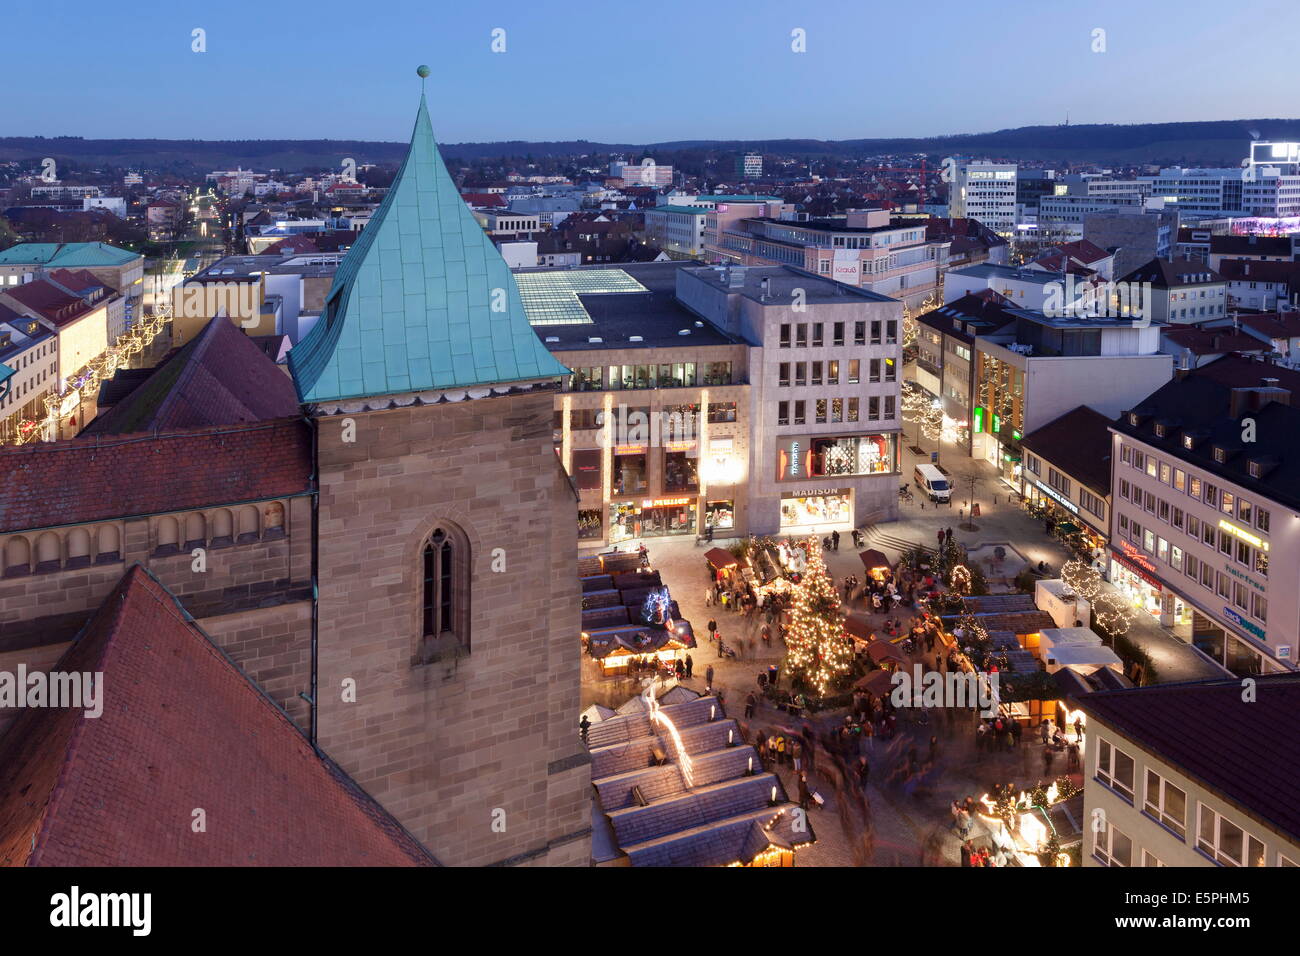 Vue depuis l'église Kilianskirche de Noël dans Kiliansplatz Square, Heilbronn, Baden Wurtemberg, Allemagne, Europe Banque D'Images